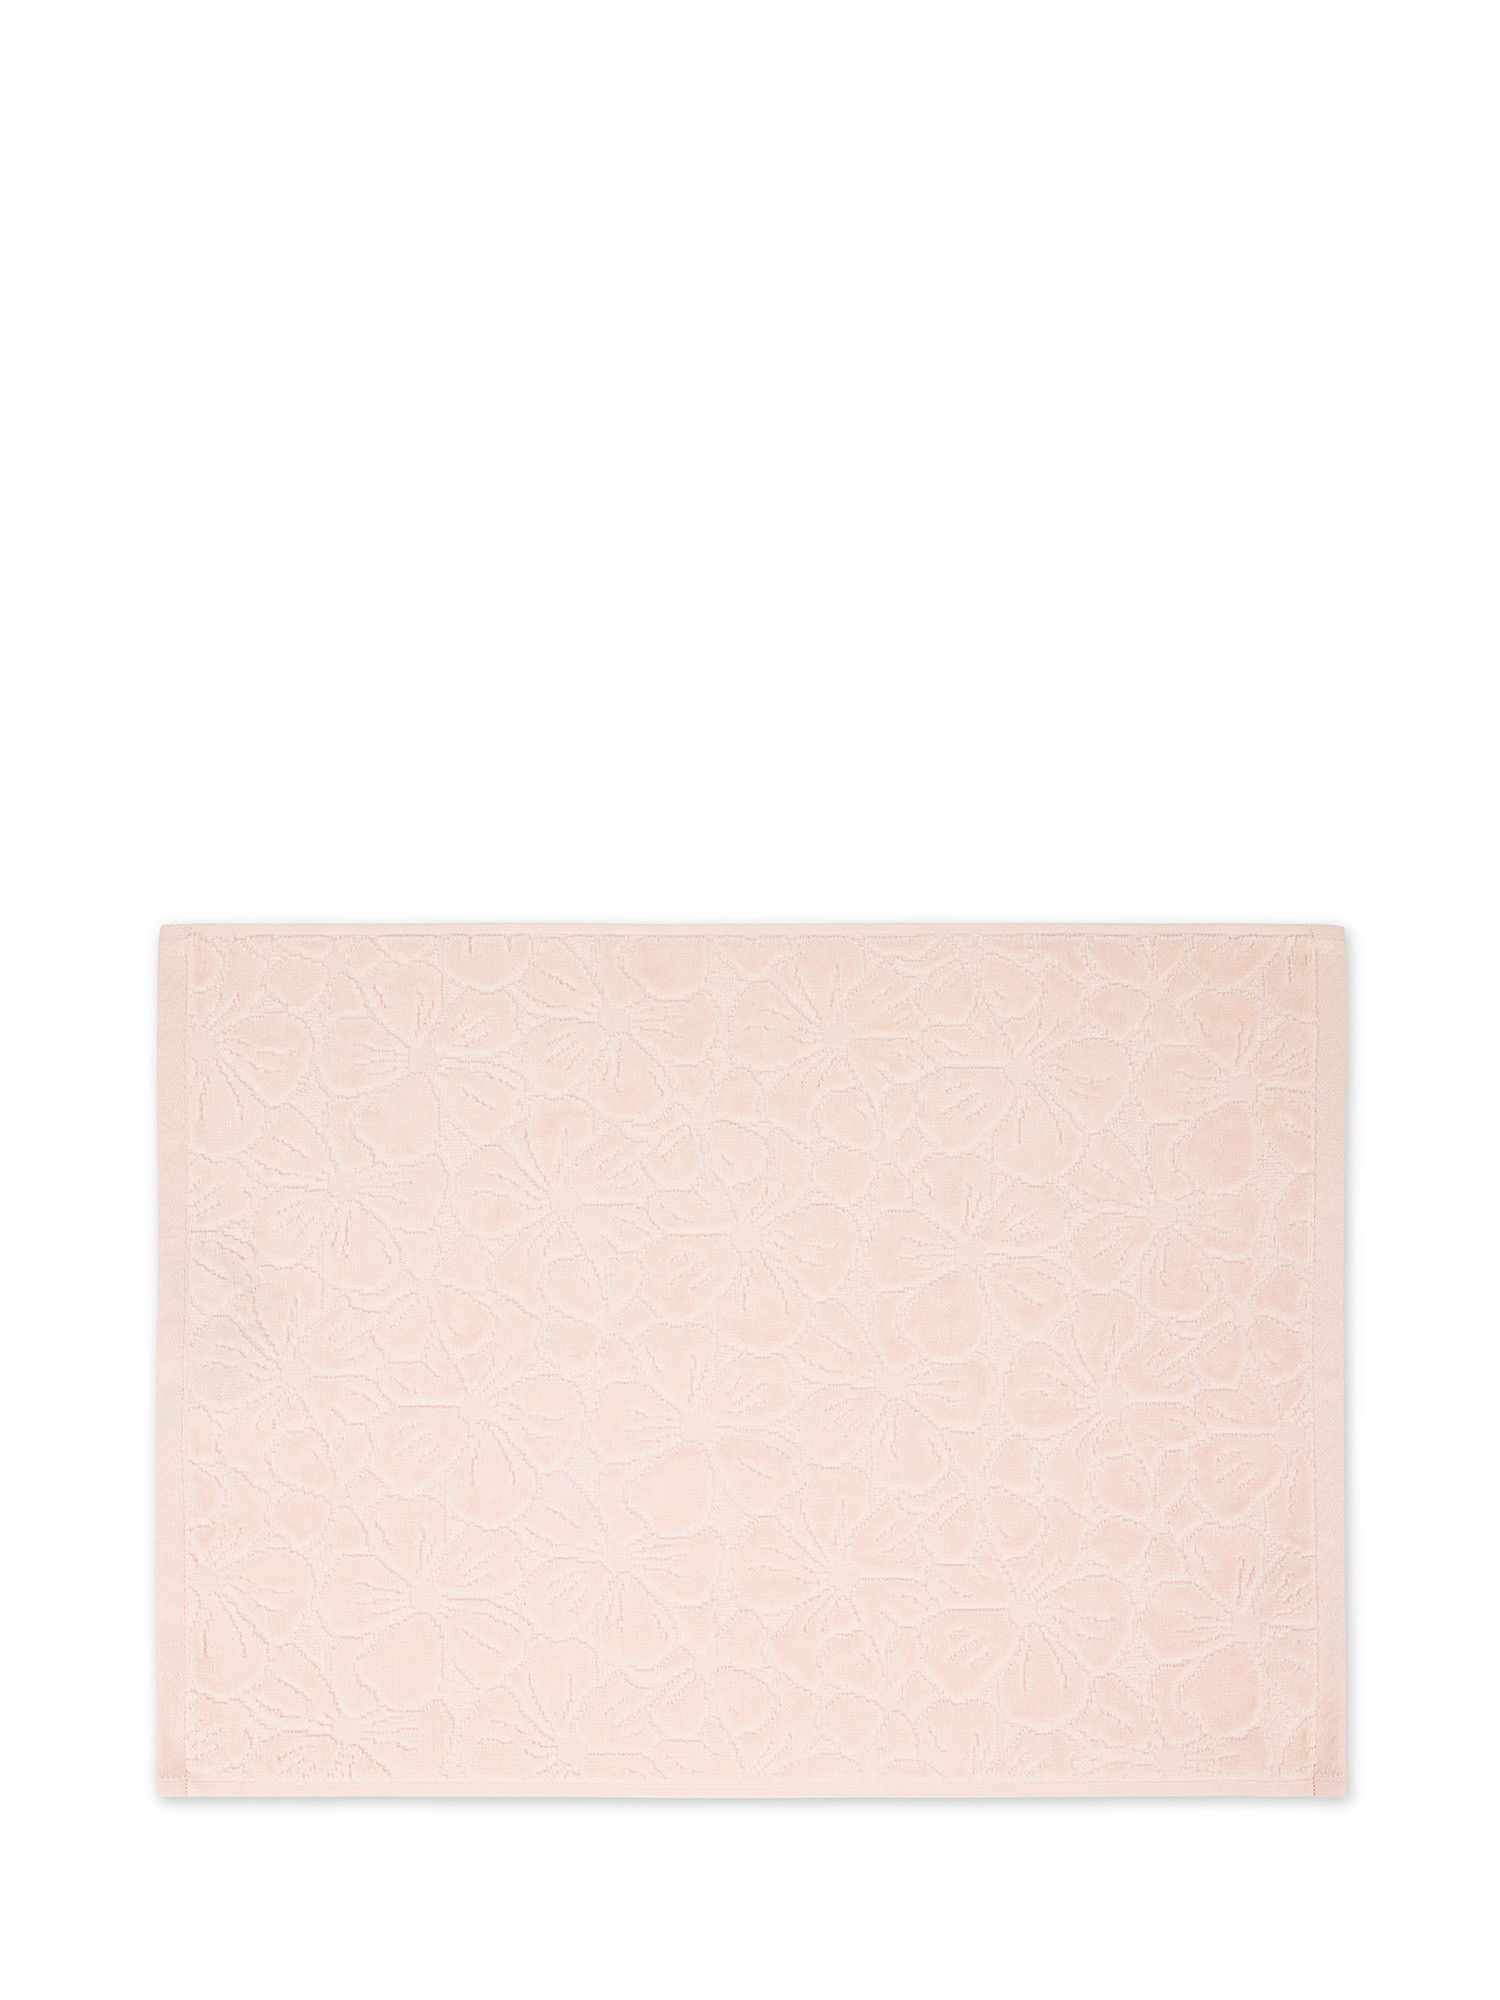 Asciugamano in velour di cotone con lavorazione fiori a rilievo, Rosa, large image number 1